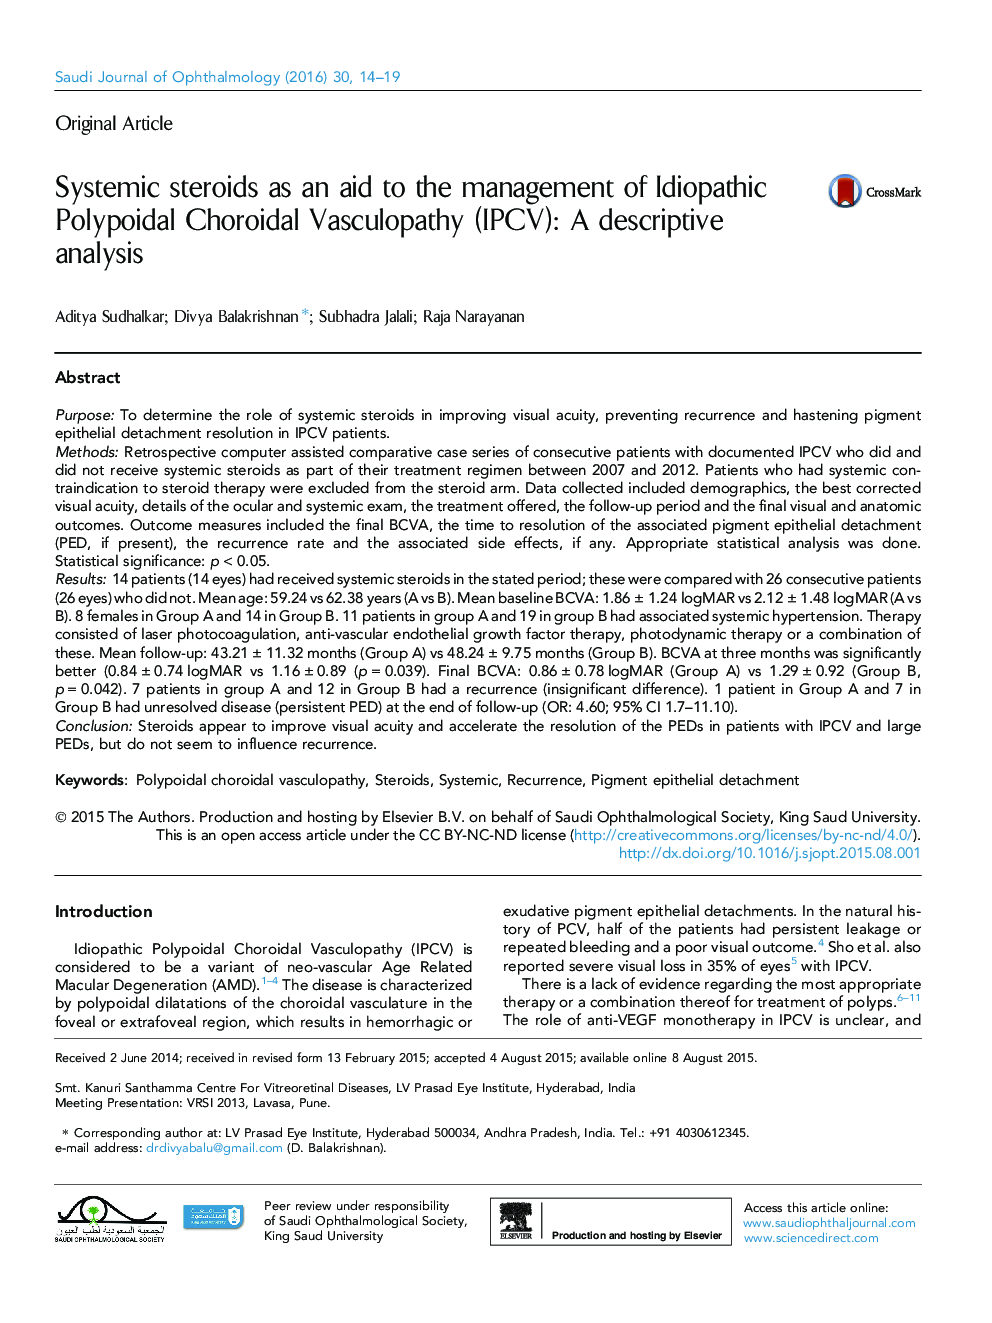 استروئیدهای سیستمیک به عنوان کمک به مدیریت اختلال عروقی Polypoidal ایدیوپاتیک کوروئیدی (IPCV): تجزیه و تحلیل توصیفی